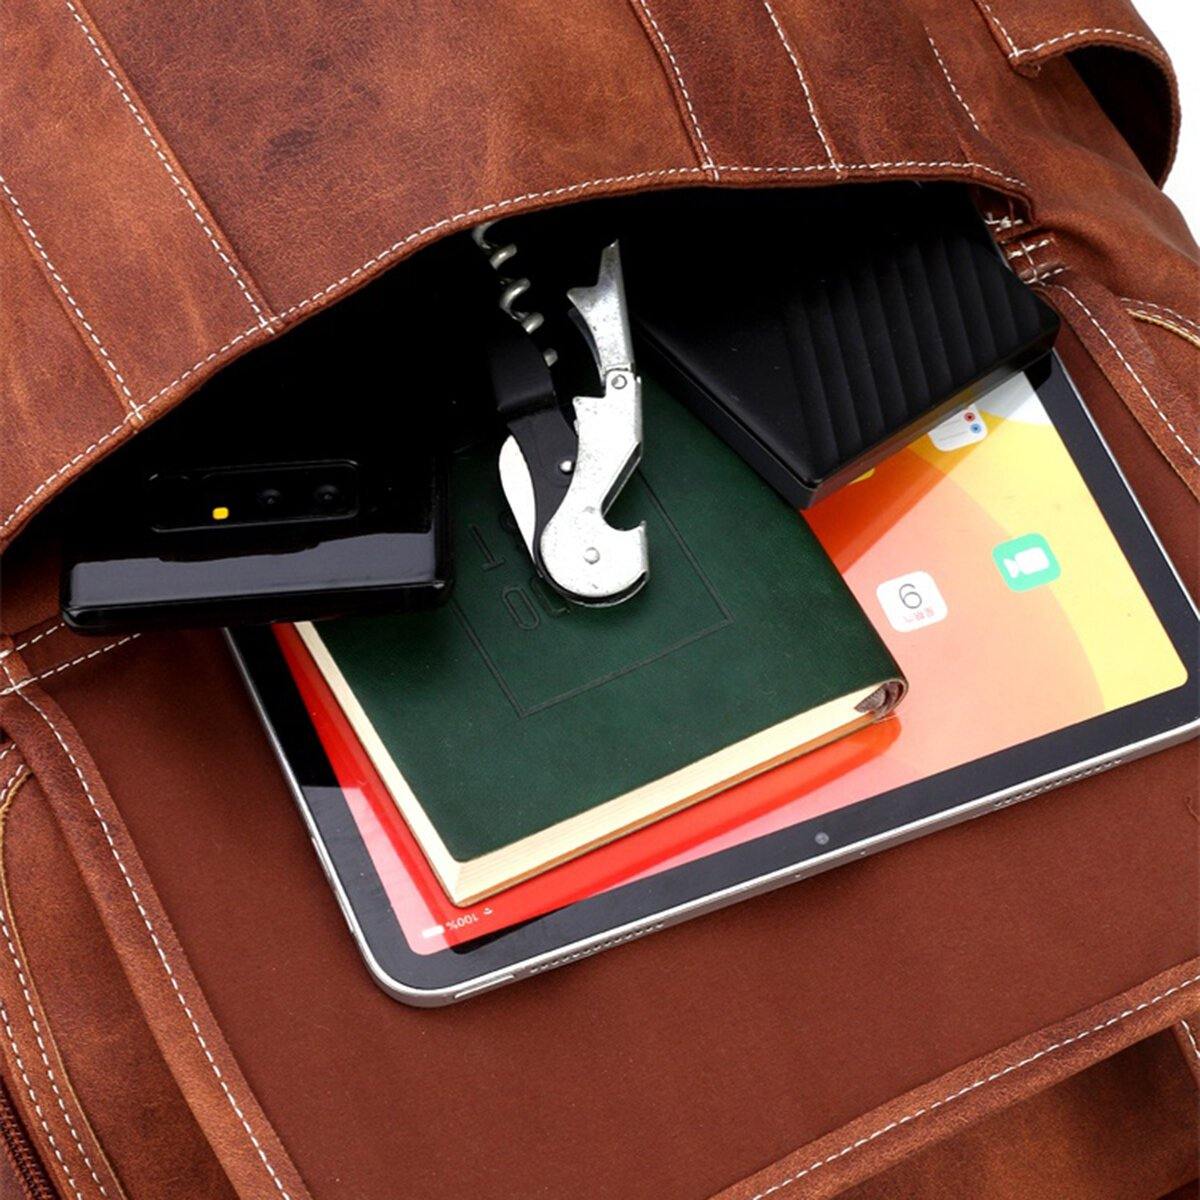 lovevop Men Vintage Multi-pocket Anti-theft 15.6 Inch Laptop Backpack